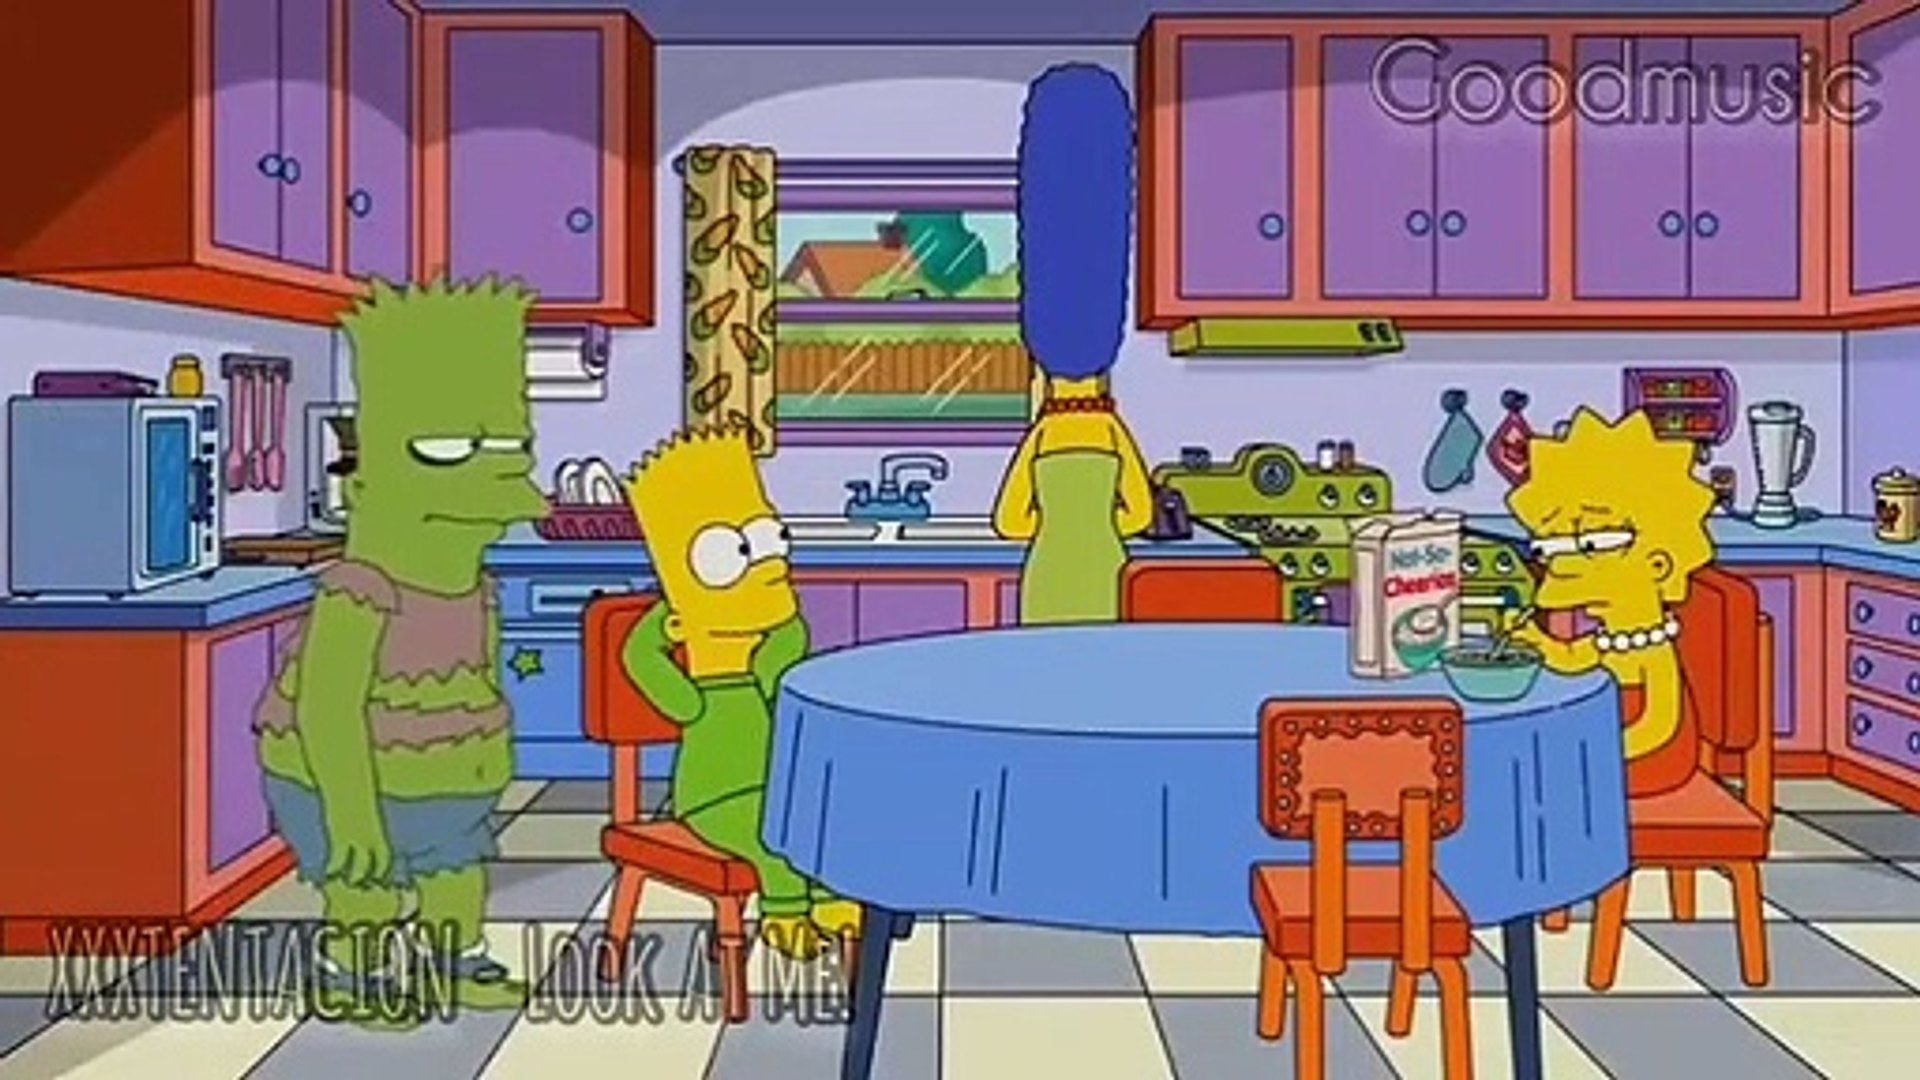 XXXTENTACION - Look At Me! ( Bart Simpson )HD